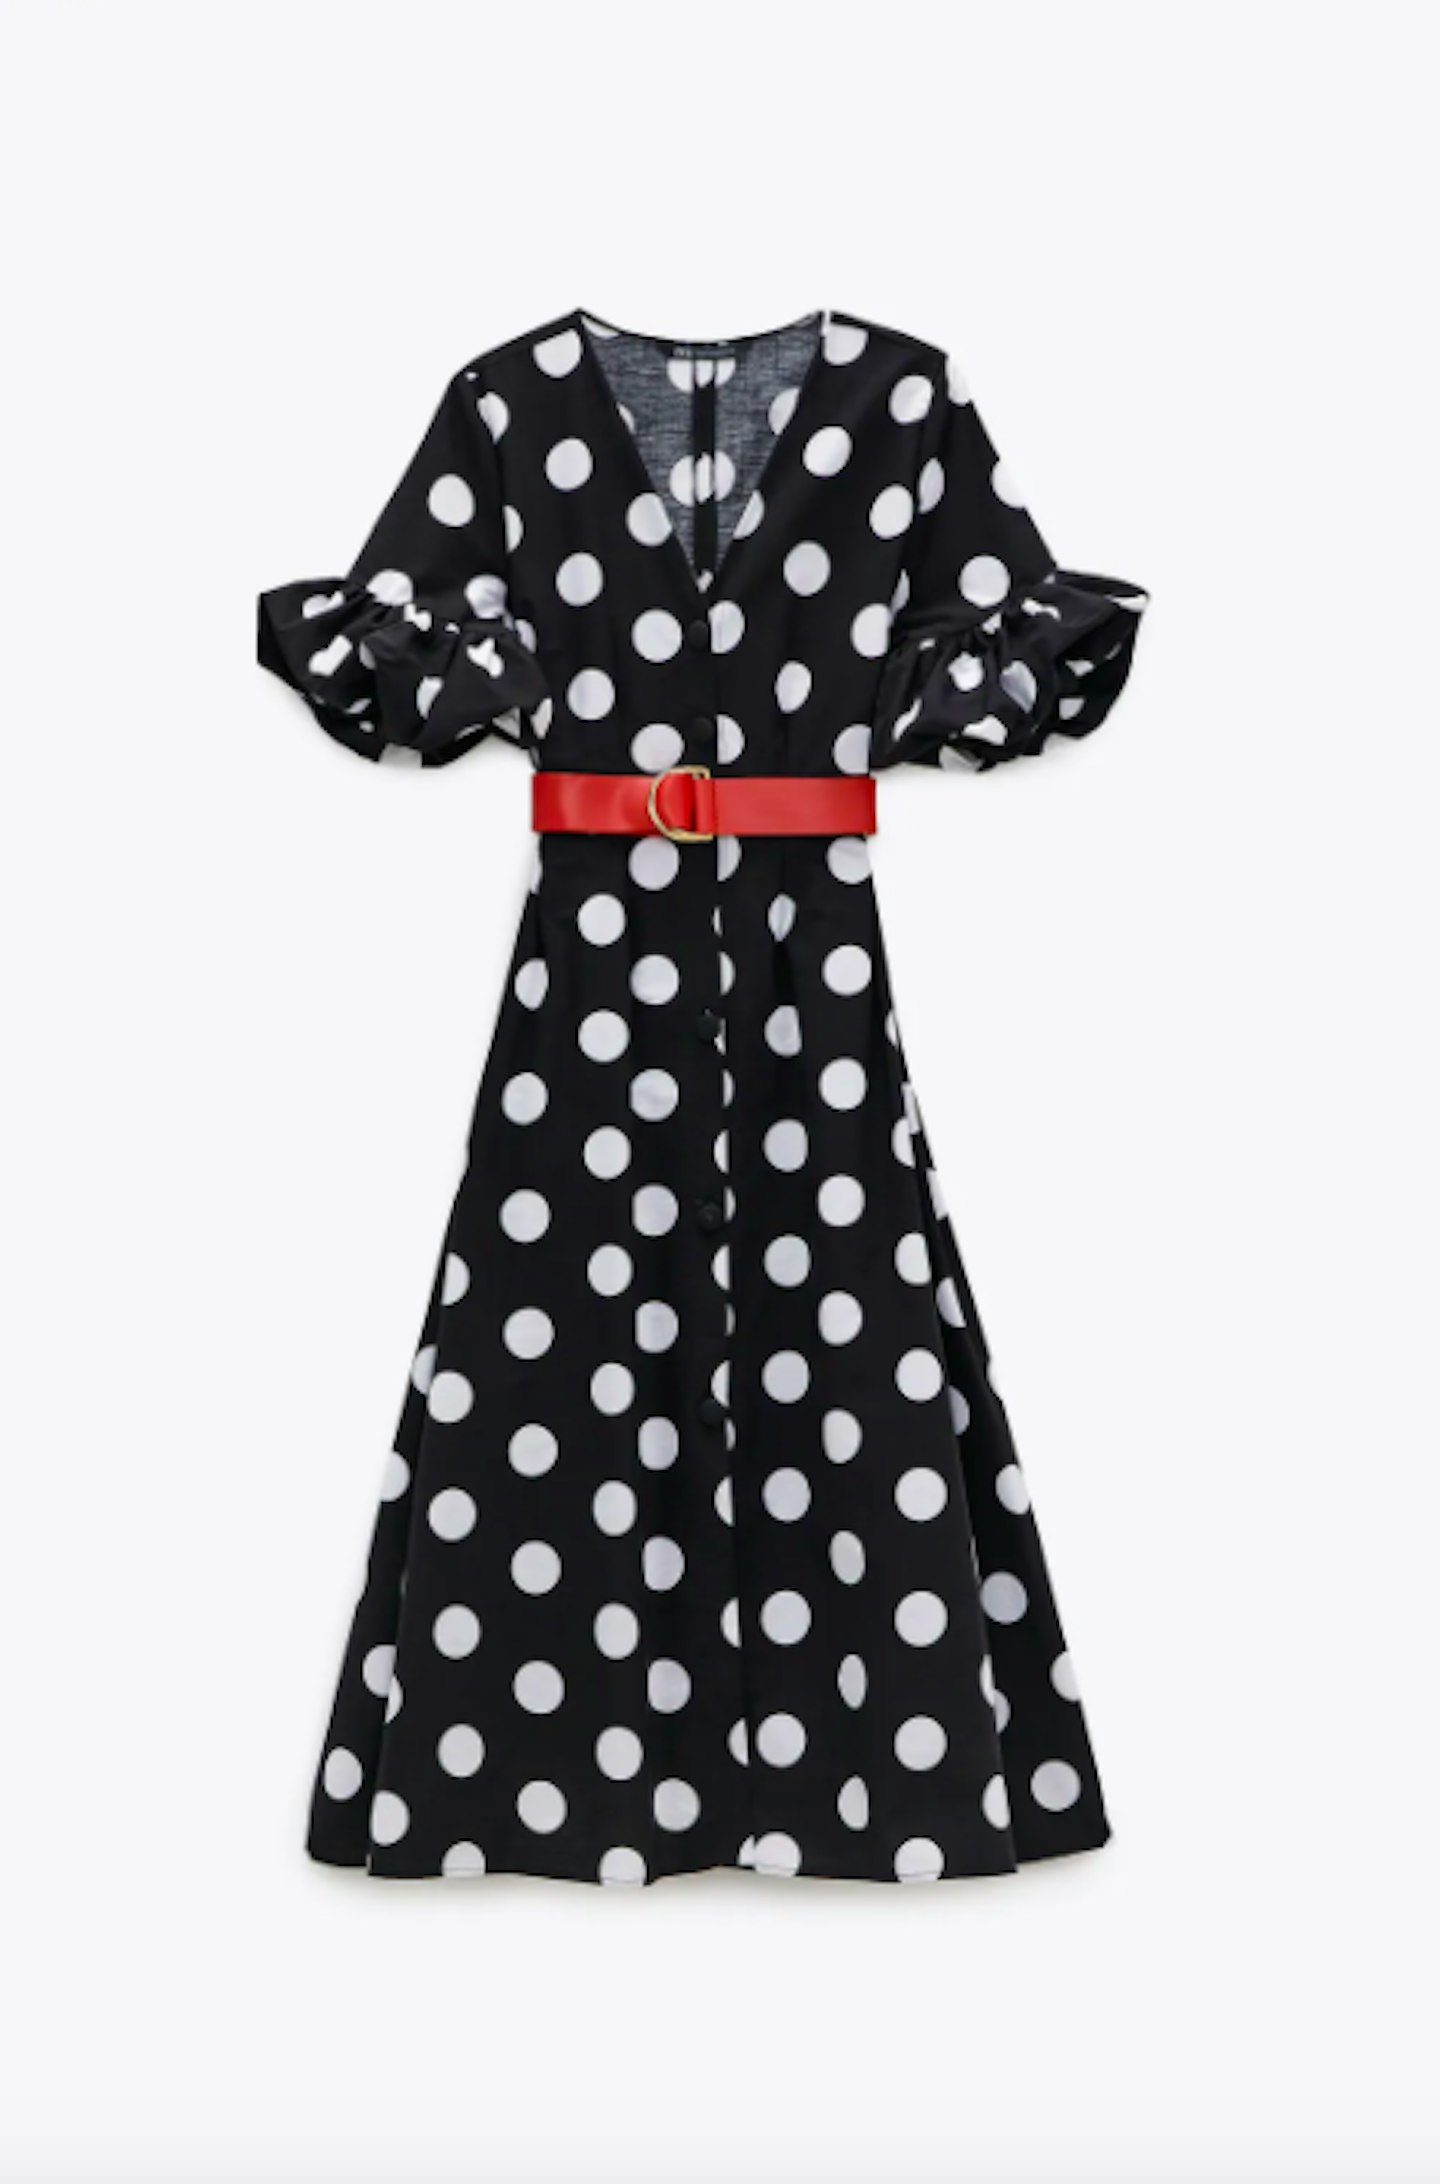 Zara, Polka Dot Dress with Belt, £49.99